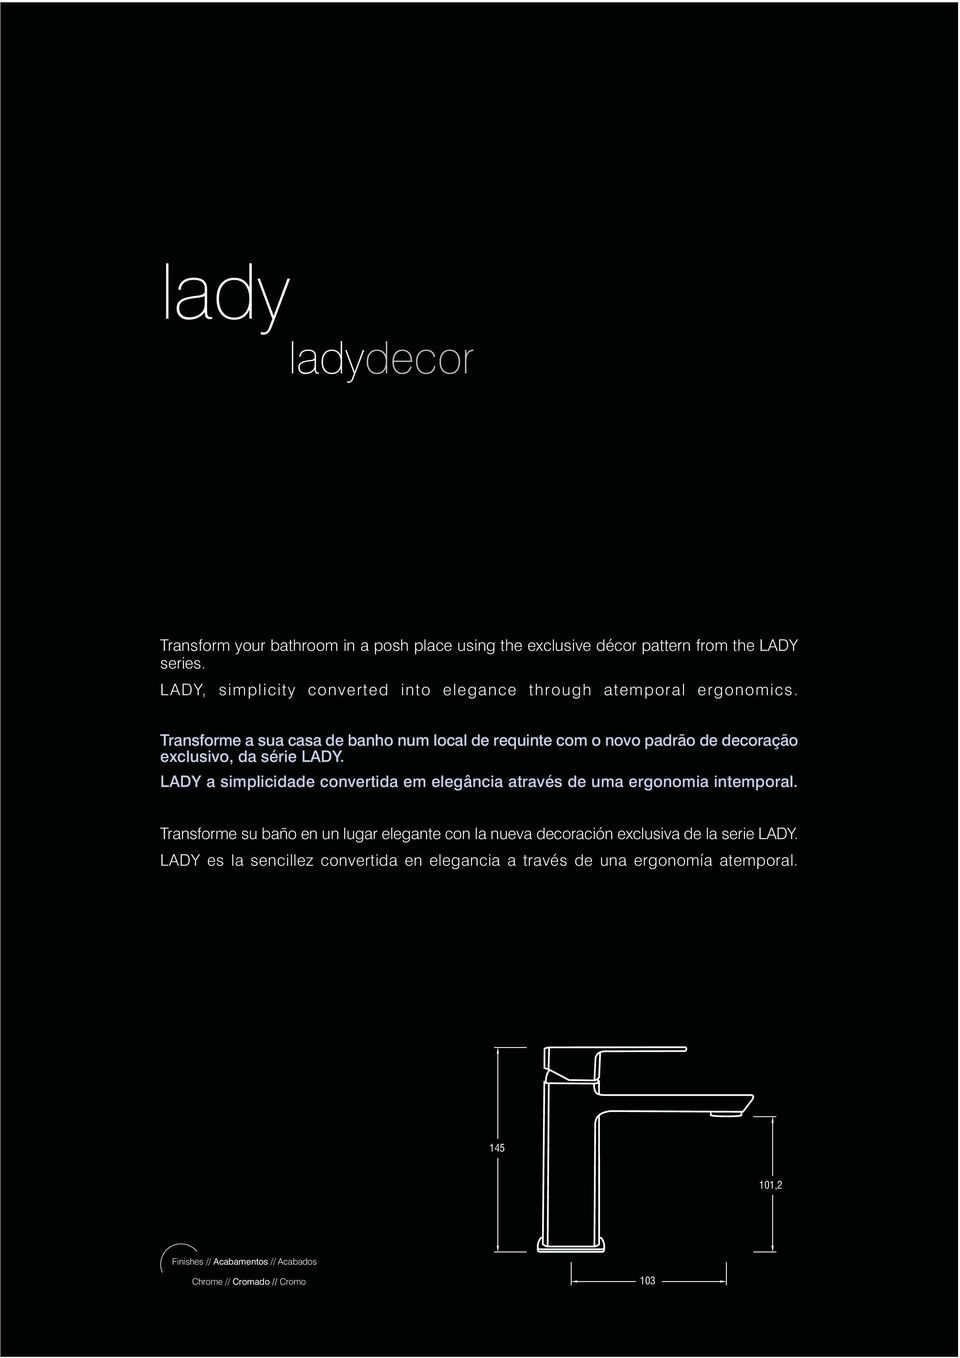 Transforme a sua casa de banho num local de requinte com o novo padrão de decoração exclusivo, da série LADY.